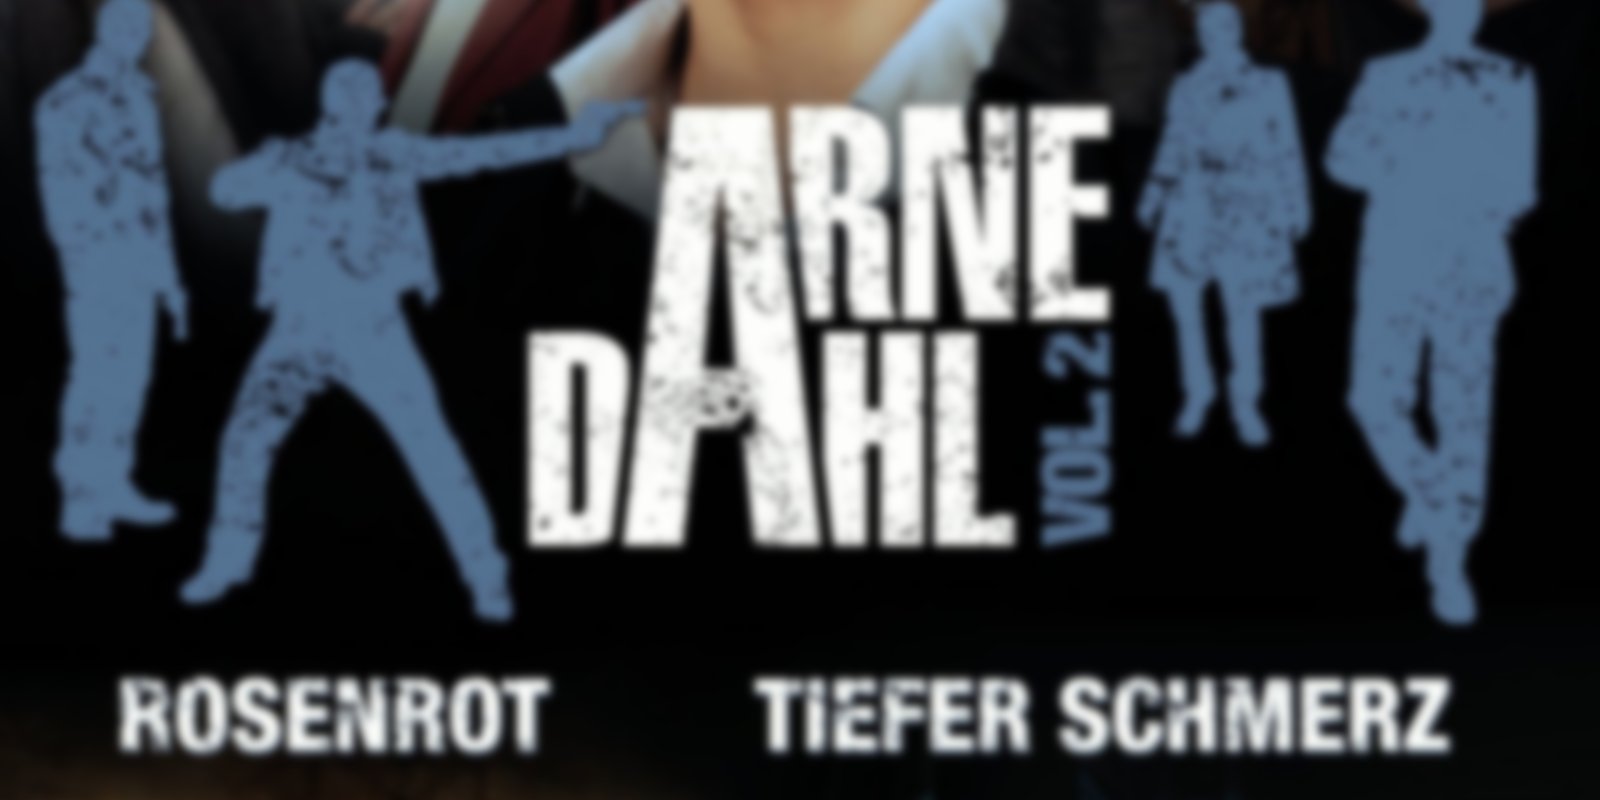 Arne Dahl - Volume 2